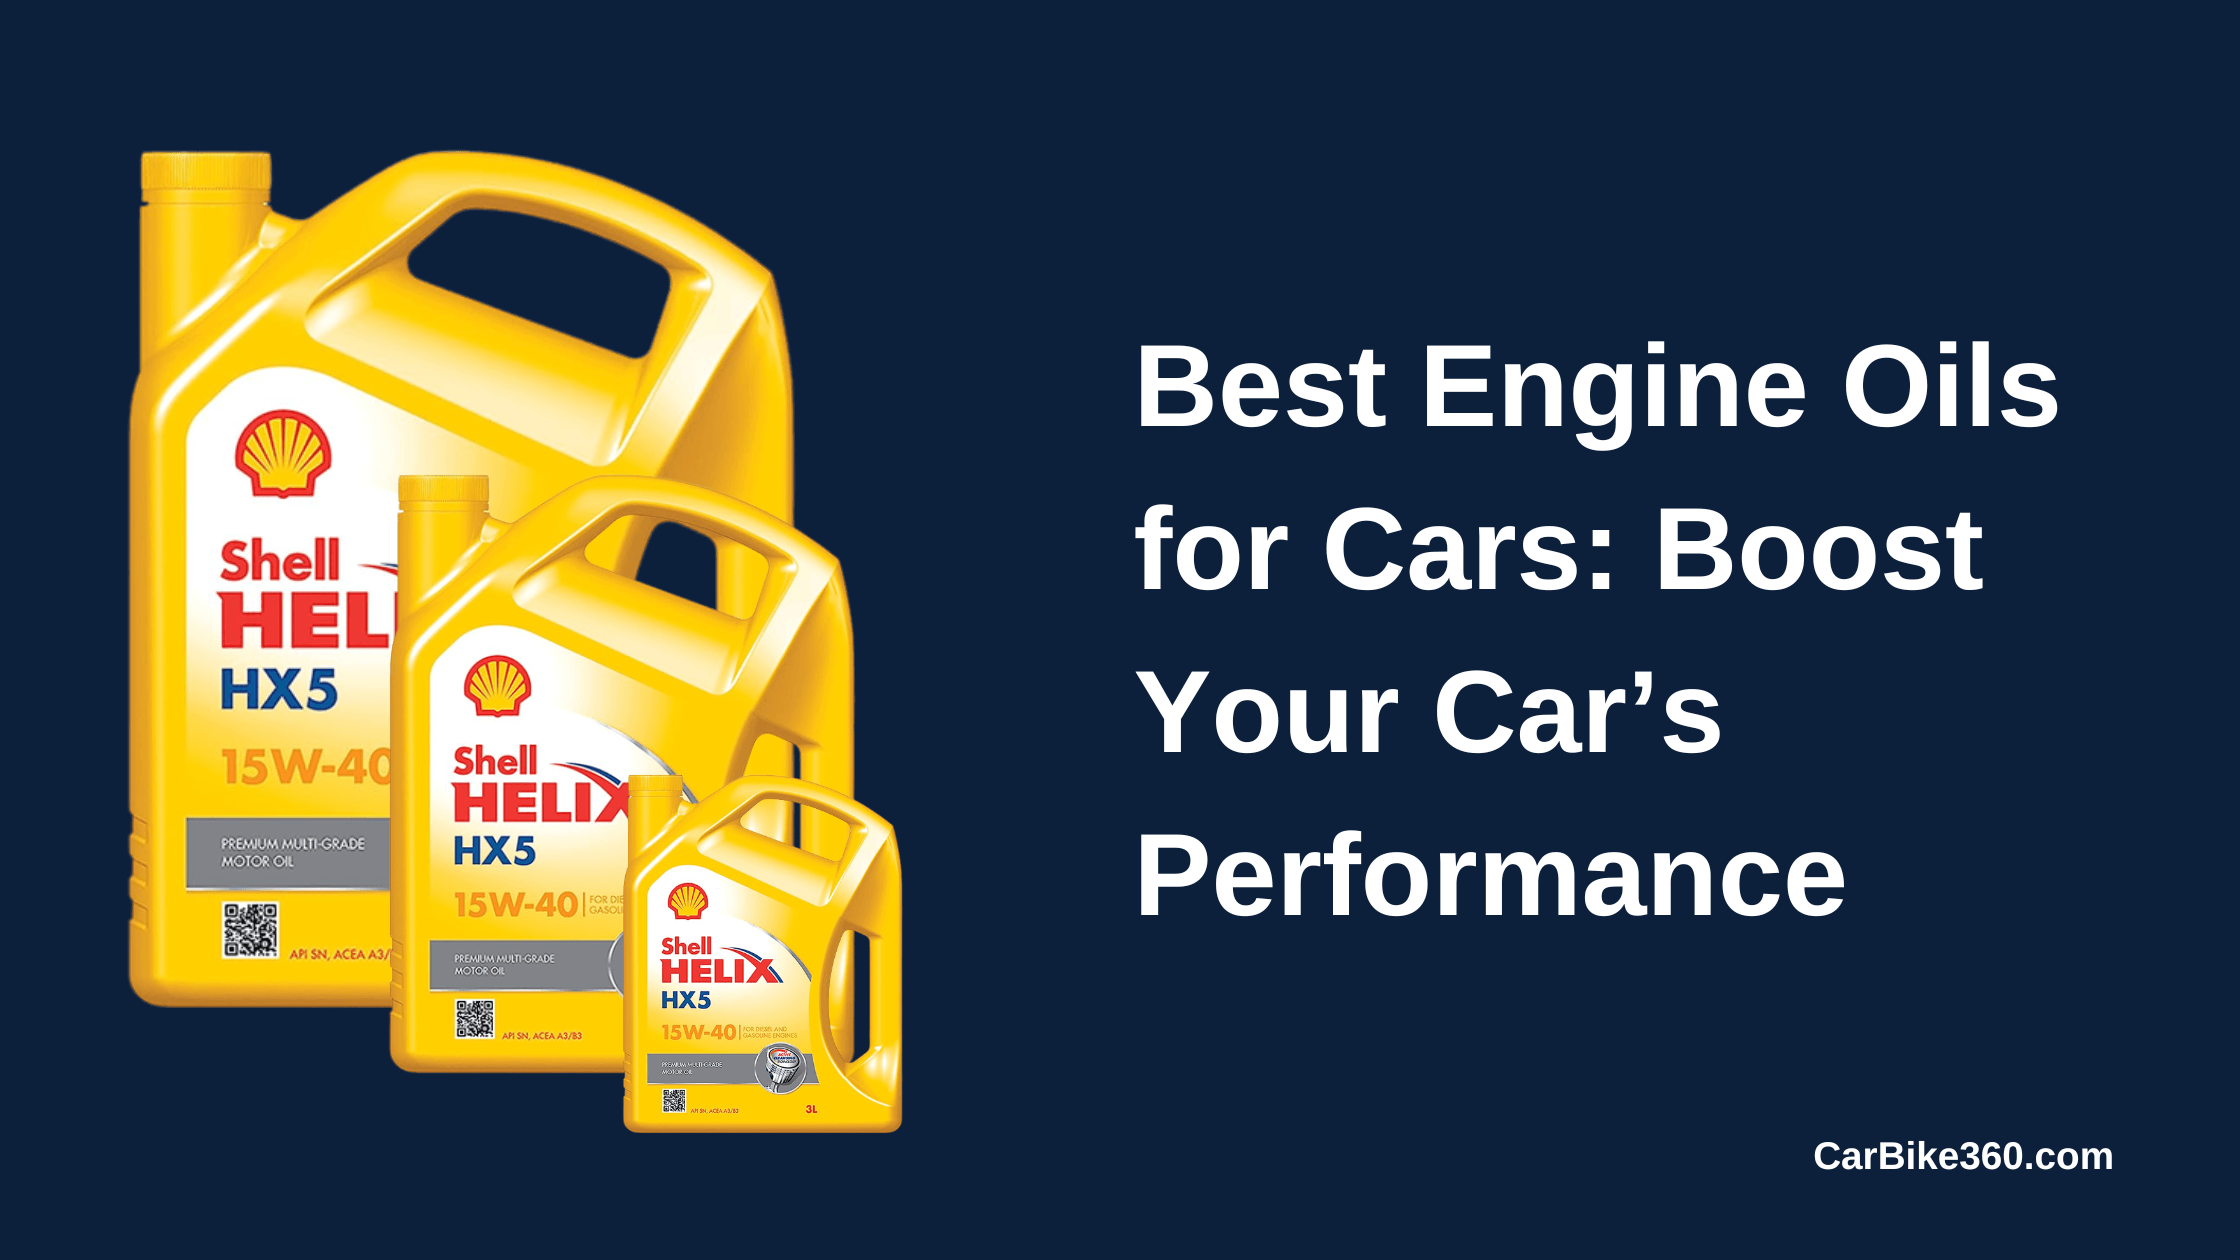 कारों के लिए सर्वश्रेष्ठ इंजन तेल: अपनी कार के प्रदर्शन को बढ़ावा दें news